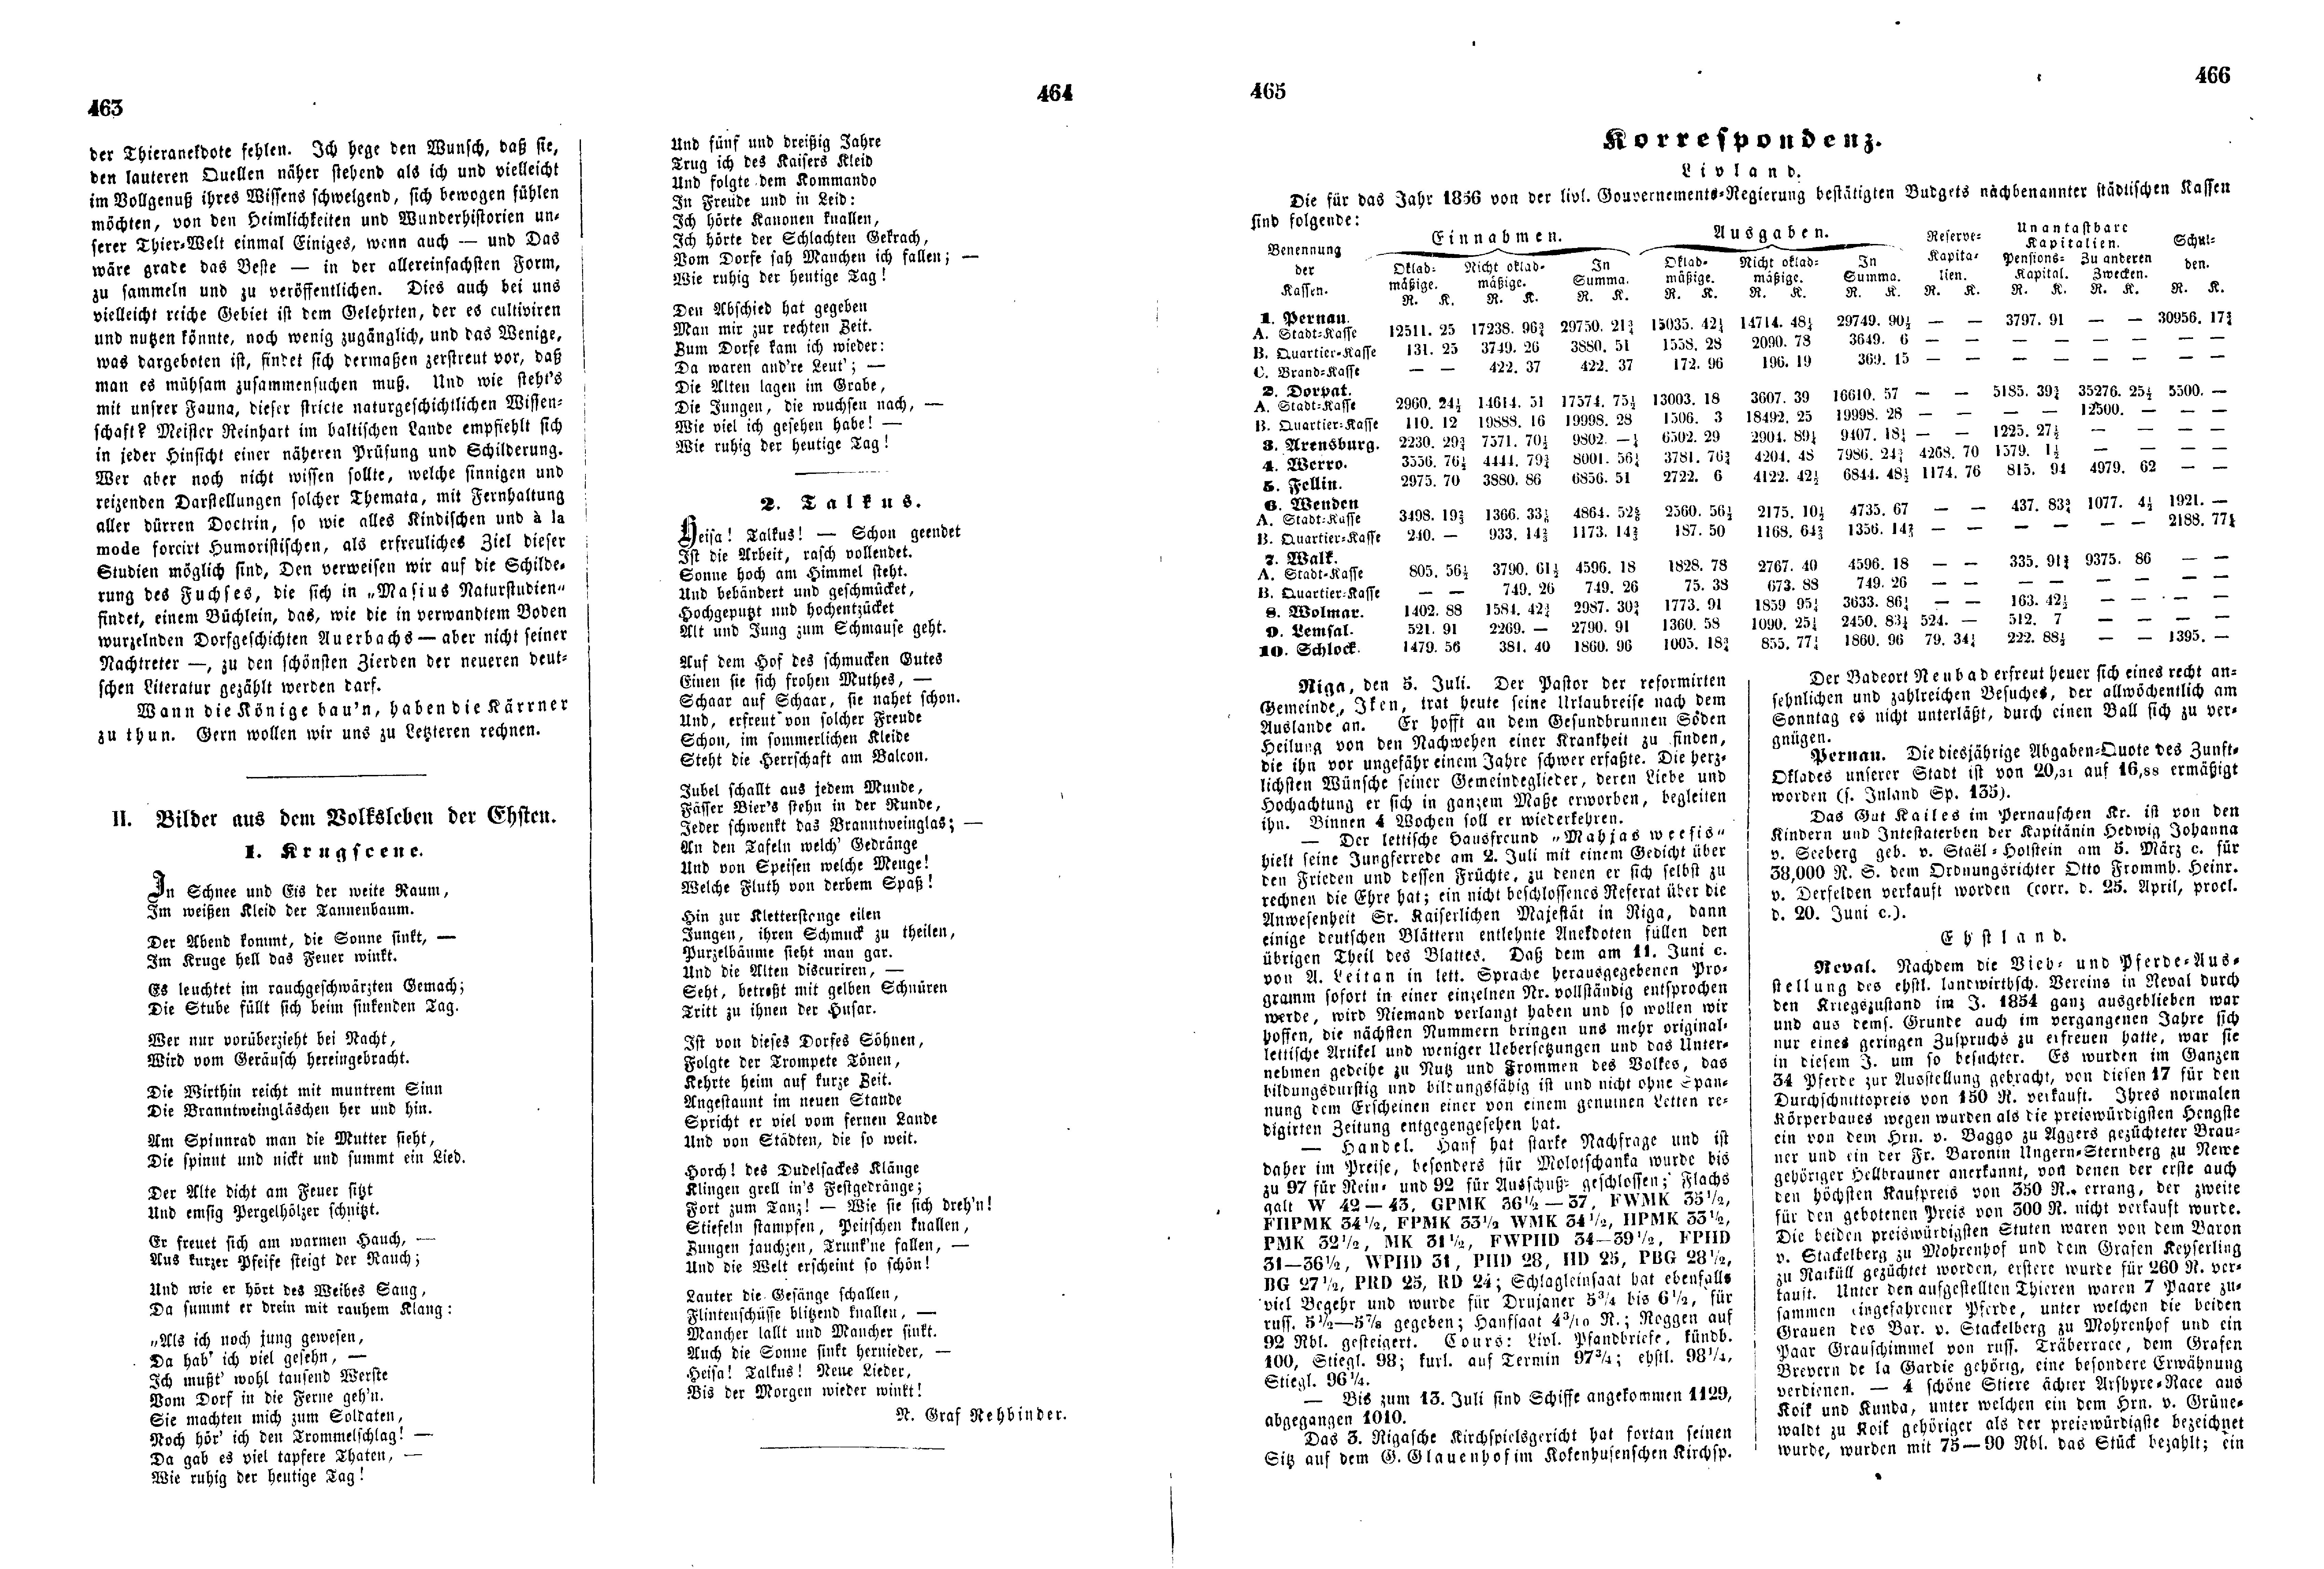 Krugscene (1856) | 1. (463-466) Основной текст